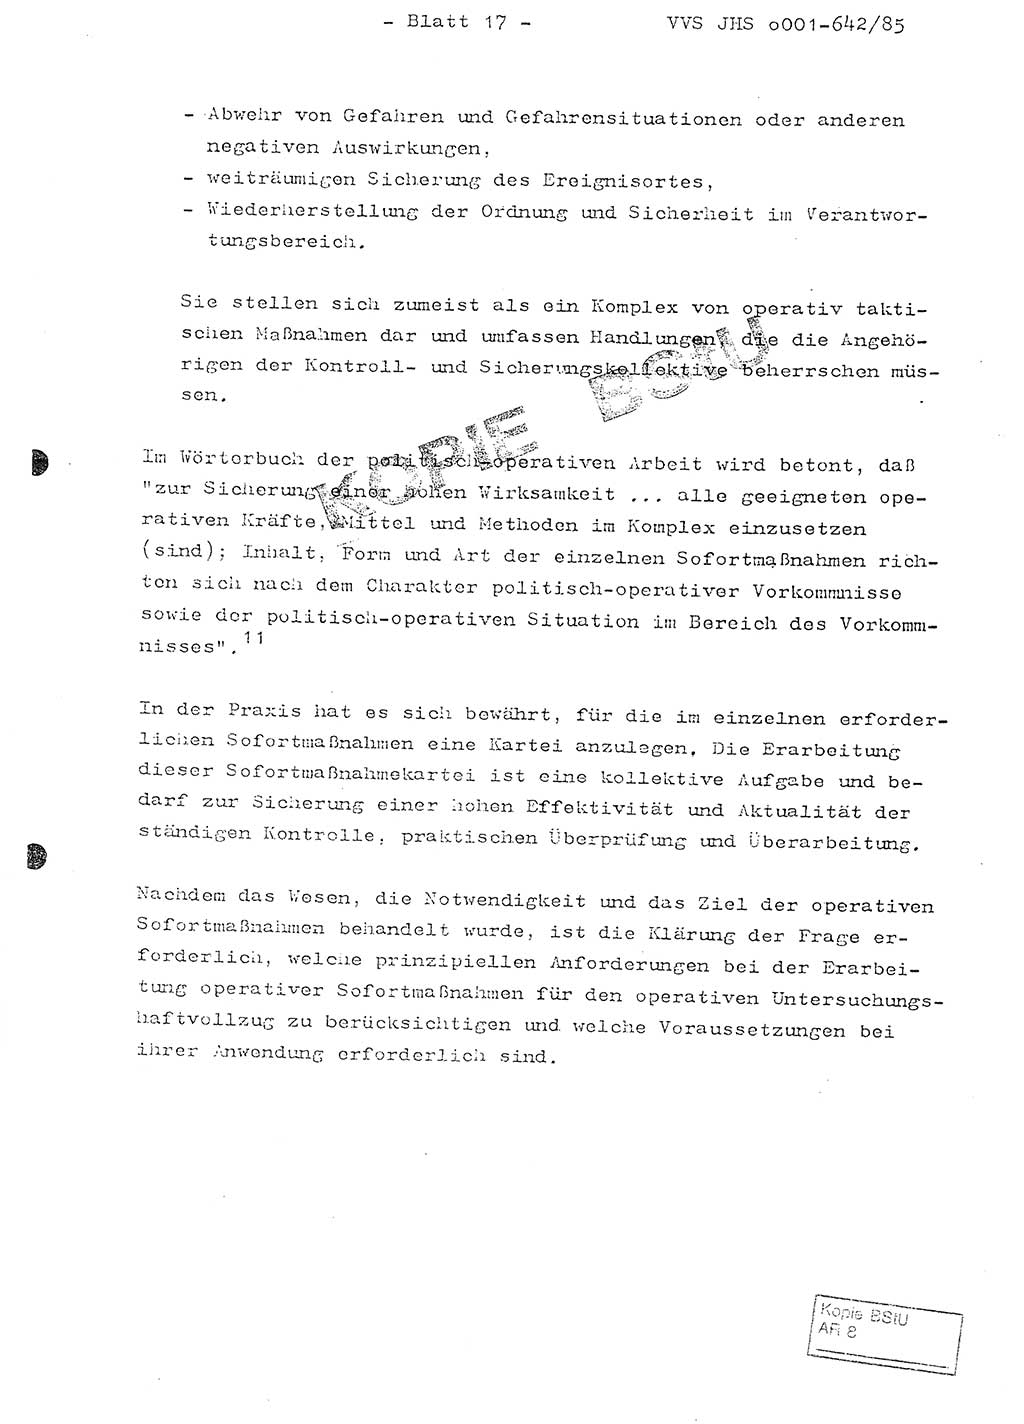 Fachschulabschlußarbeit Oberleutnant Lothar Fahland (Abt. ⅩⅣ), Ministerium für Staatssicherheit (MfS) [Deutsche Demokratische Republik (DDR)], Juristische Hochschule (JHS), Vertrauliche Verschlußsache (VVS) o001-642/85, Potsdam 1985, Blatt 17 (FS-Abschl.-Arb. MfS DDR JHS VVS o001-642/85 1985, Bl. 17)